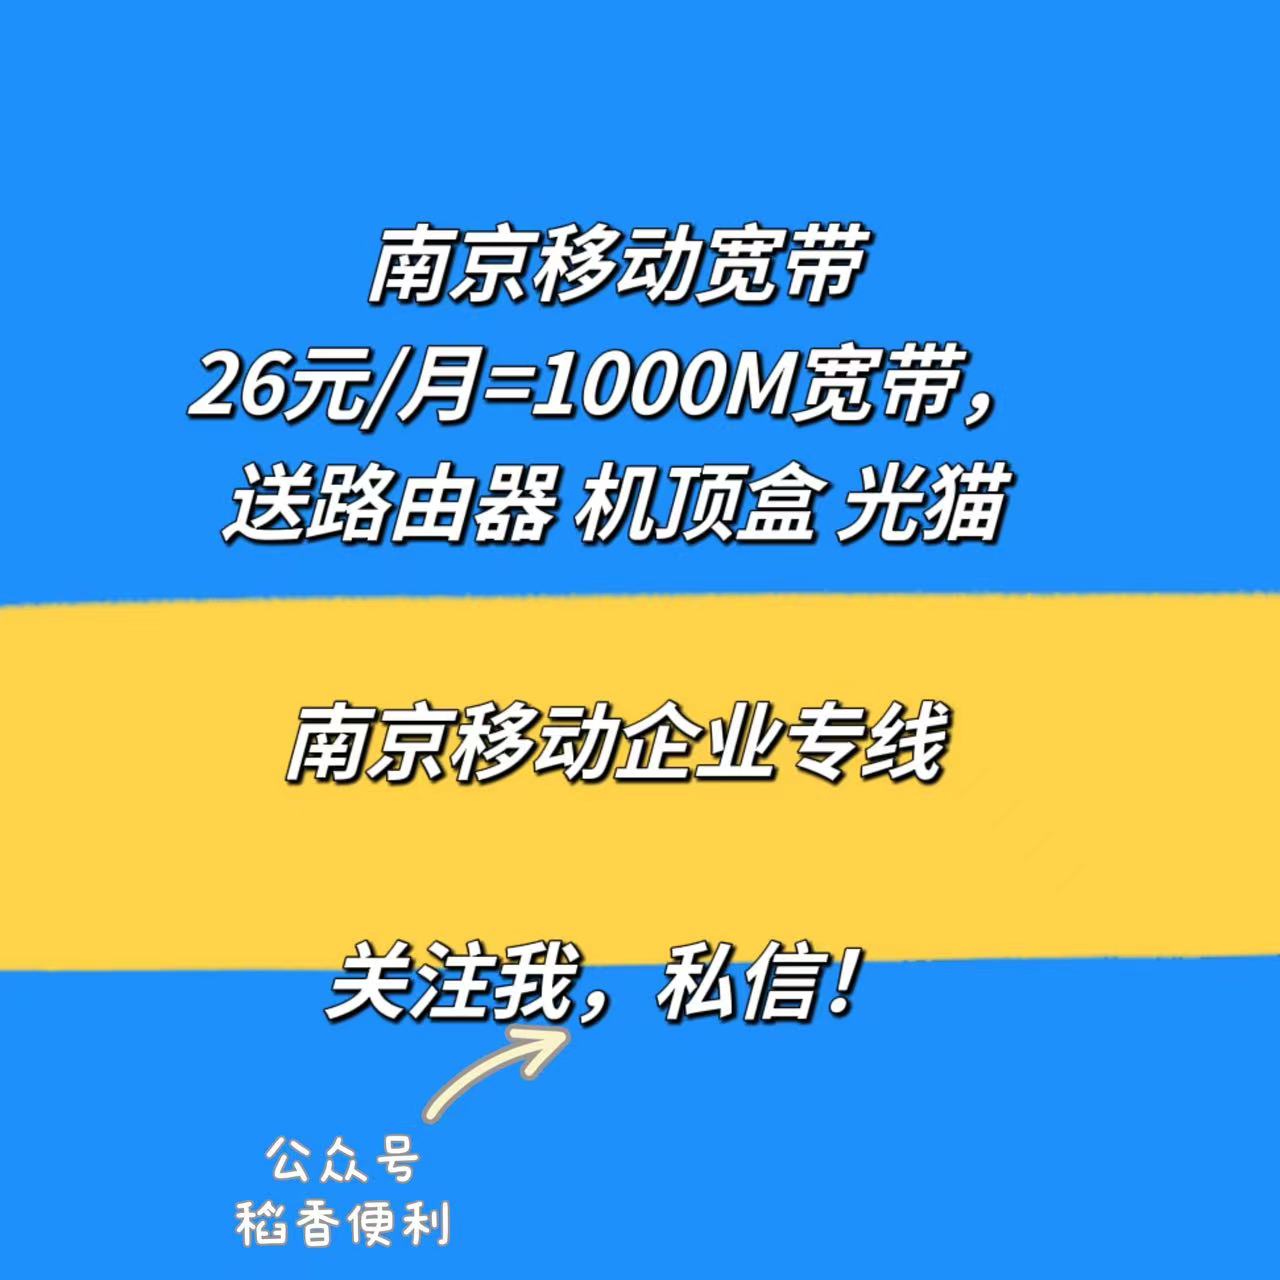 南京移动千兆宽带办理 业务微信18805161688